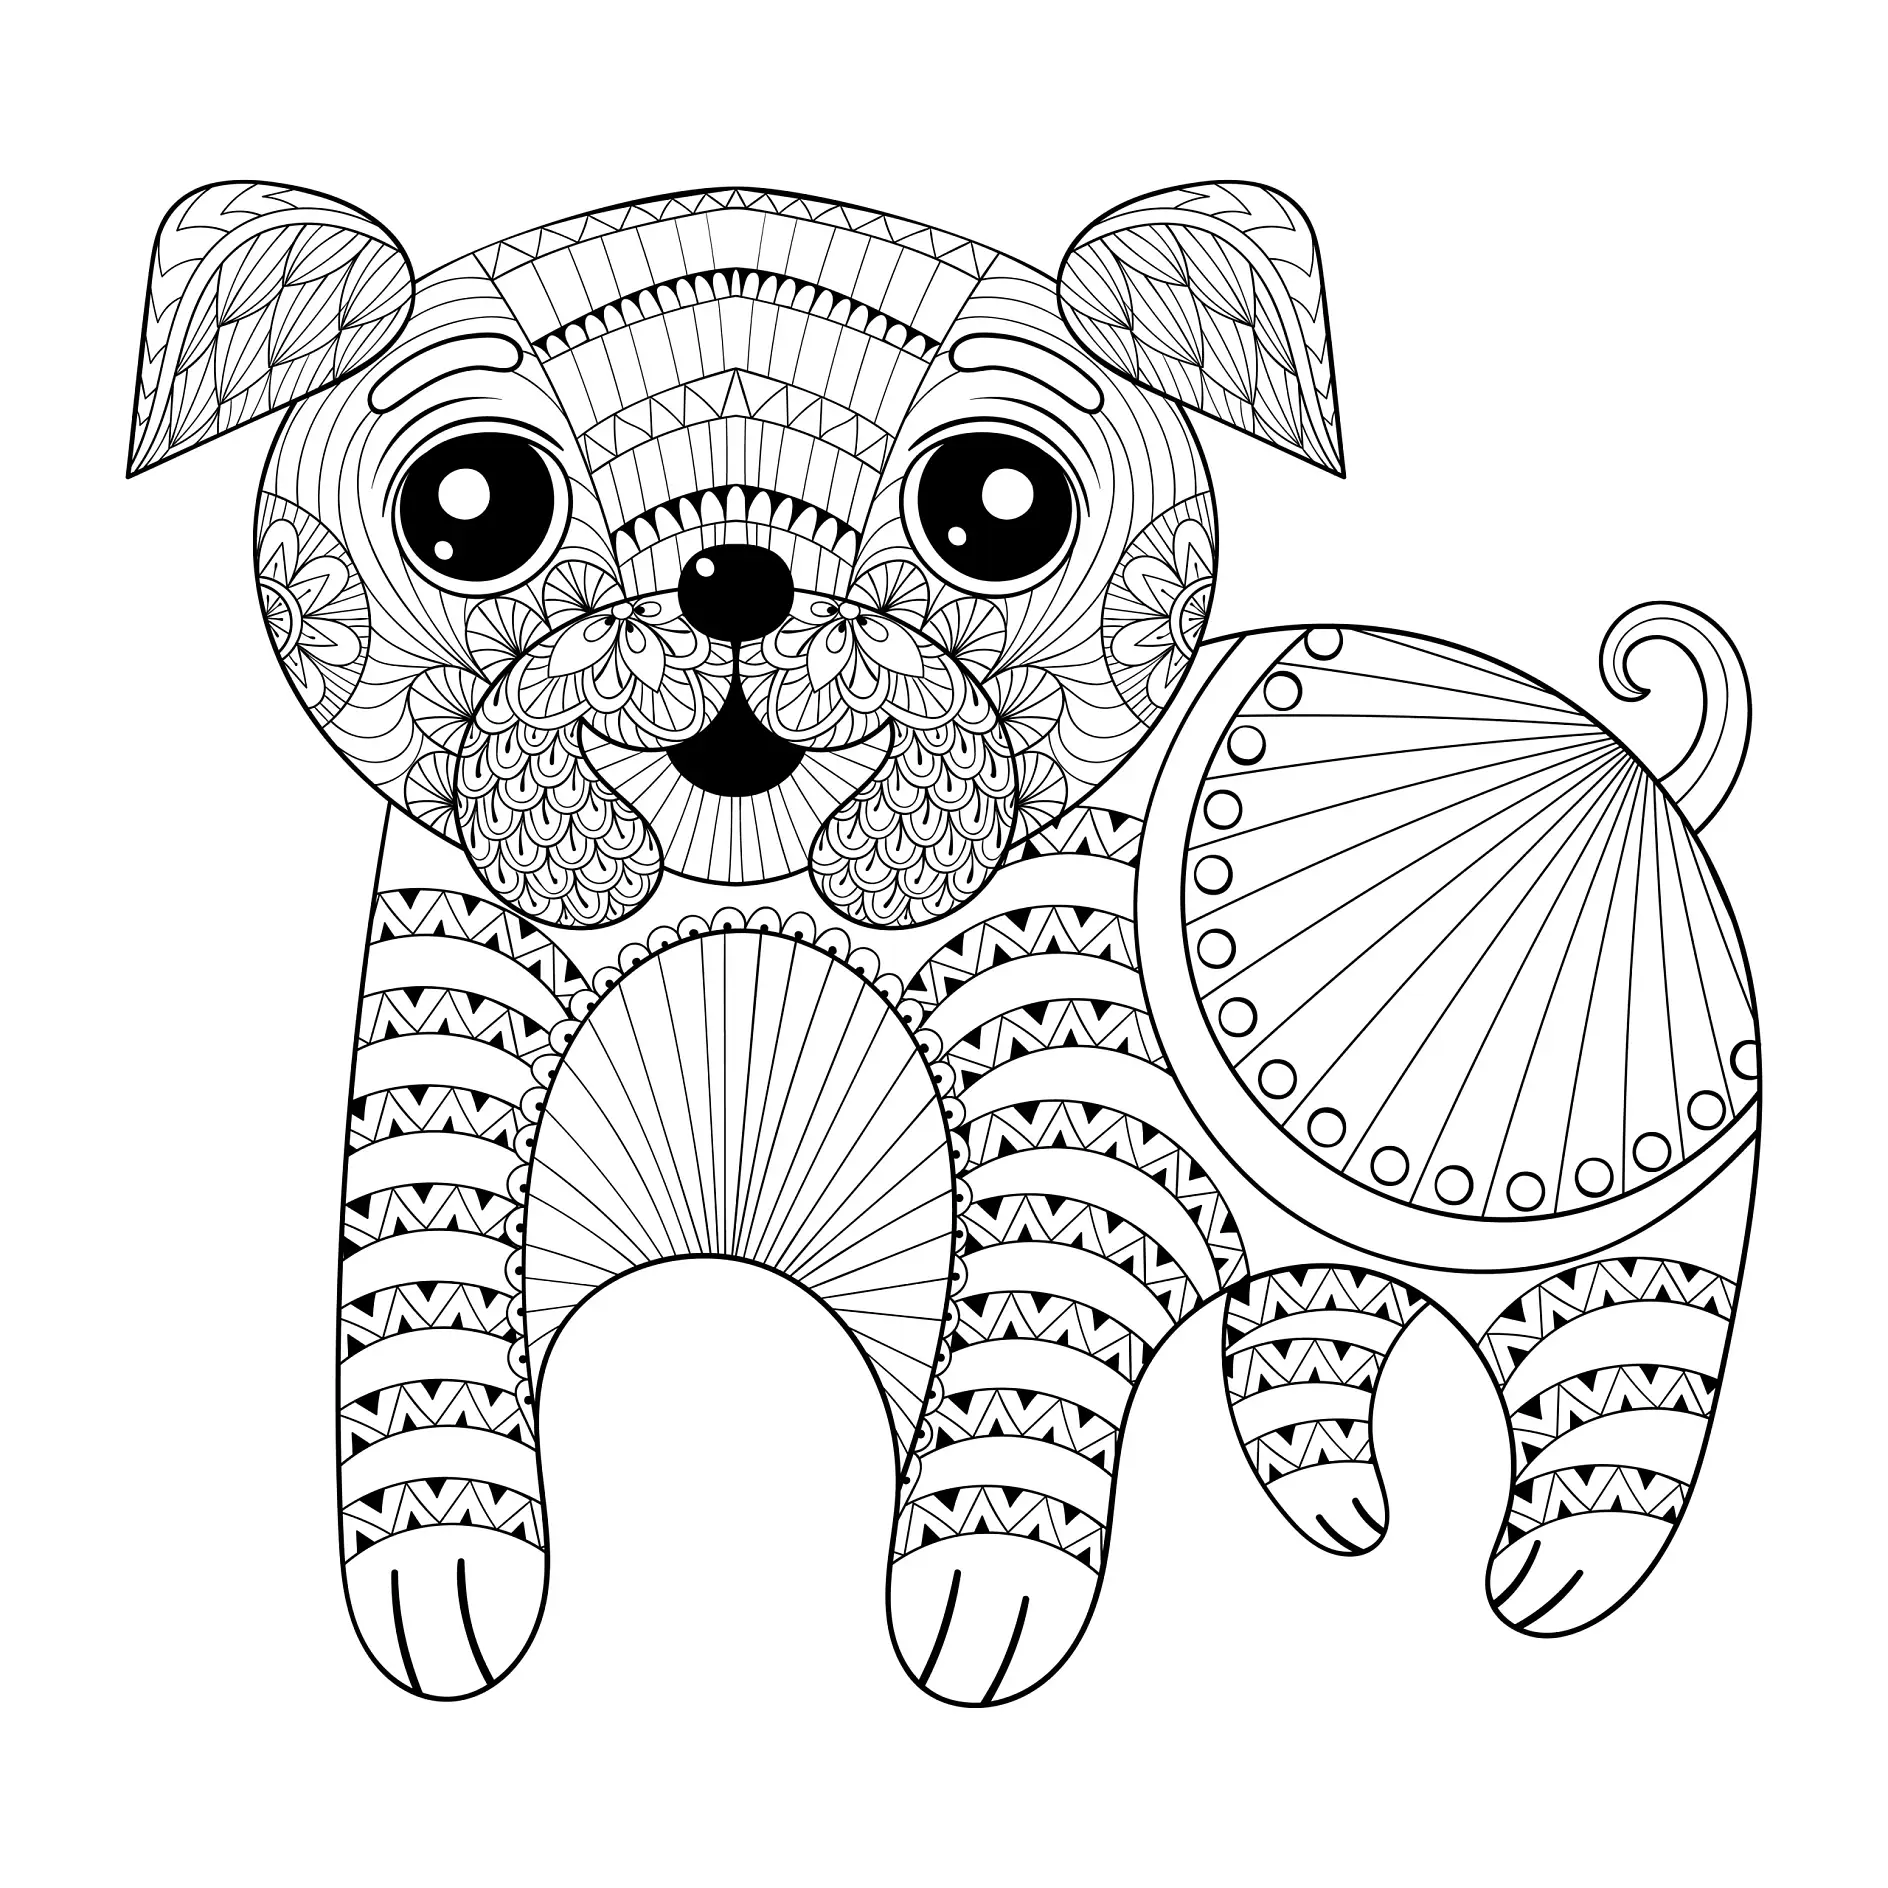 Ausmalbild Mandala mit Hund und geometrischen Mustern und Linien